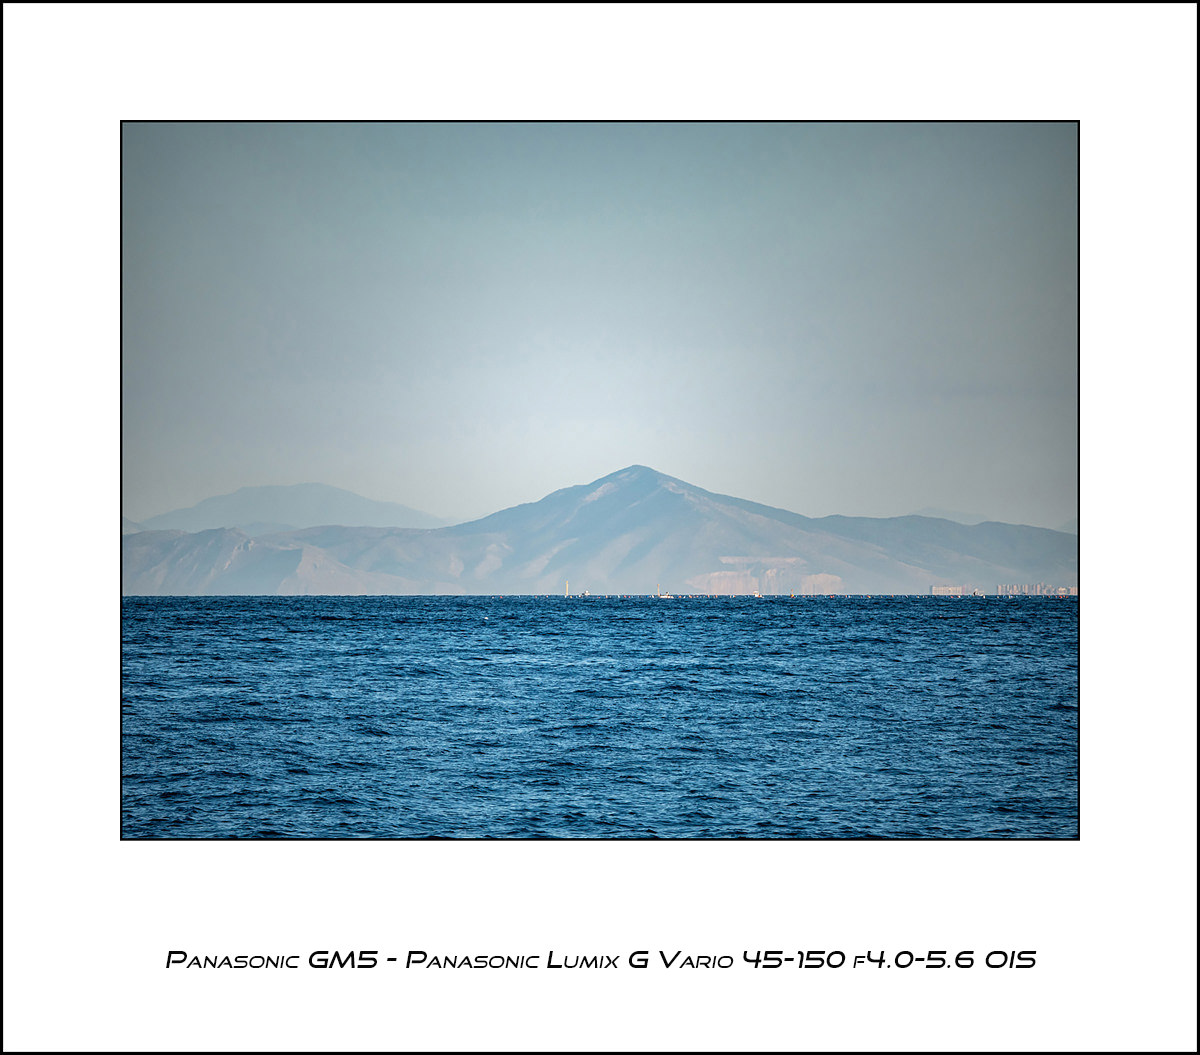 Panasonic GM5 - Panasonic LUMIX G Vario 45-150 f4.0-5.6